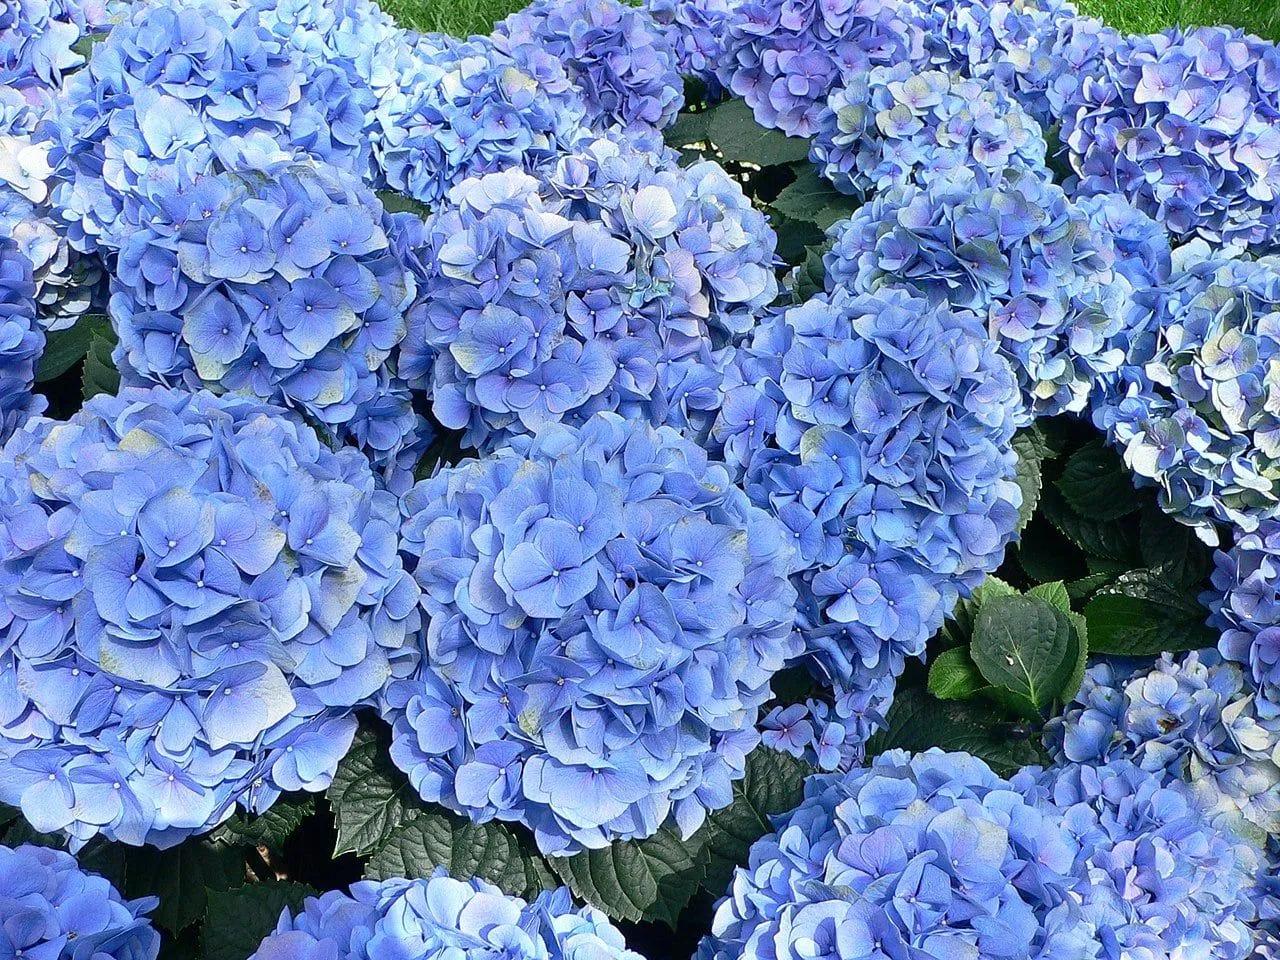 Blue Hydrangeas in the Flower Bed